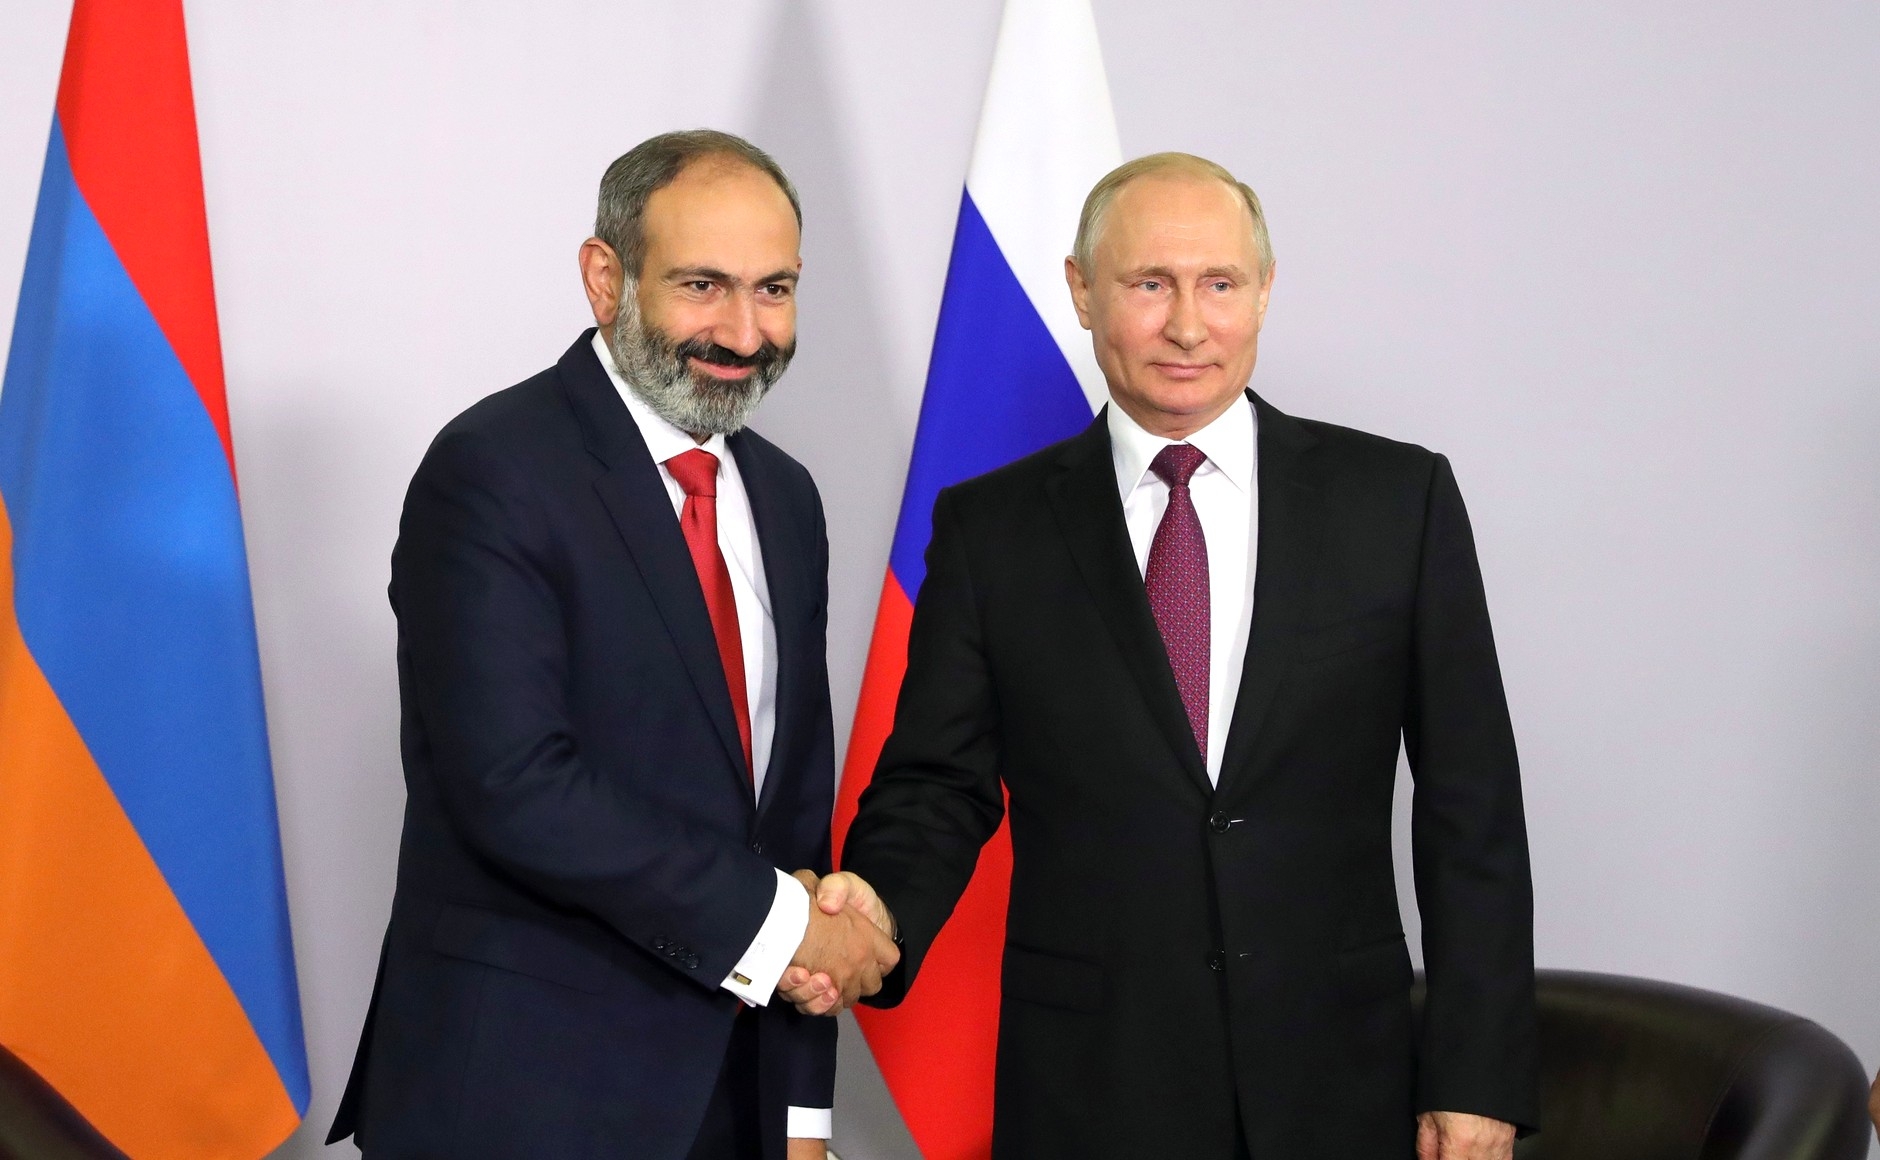 Paşinyan ve Putin, Karabağ anlaşmasının uygulanmasını görüştü